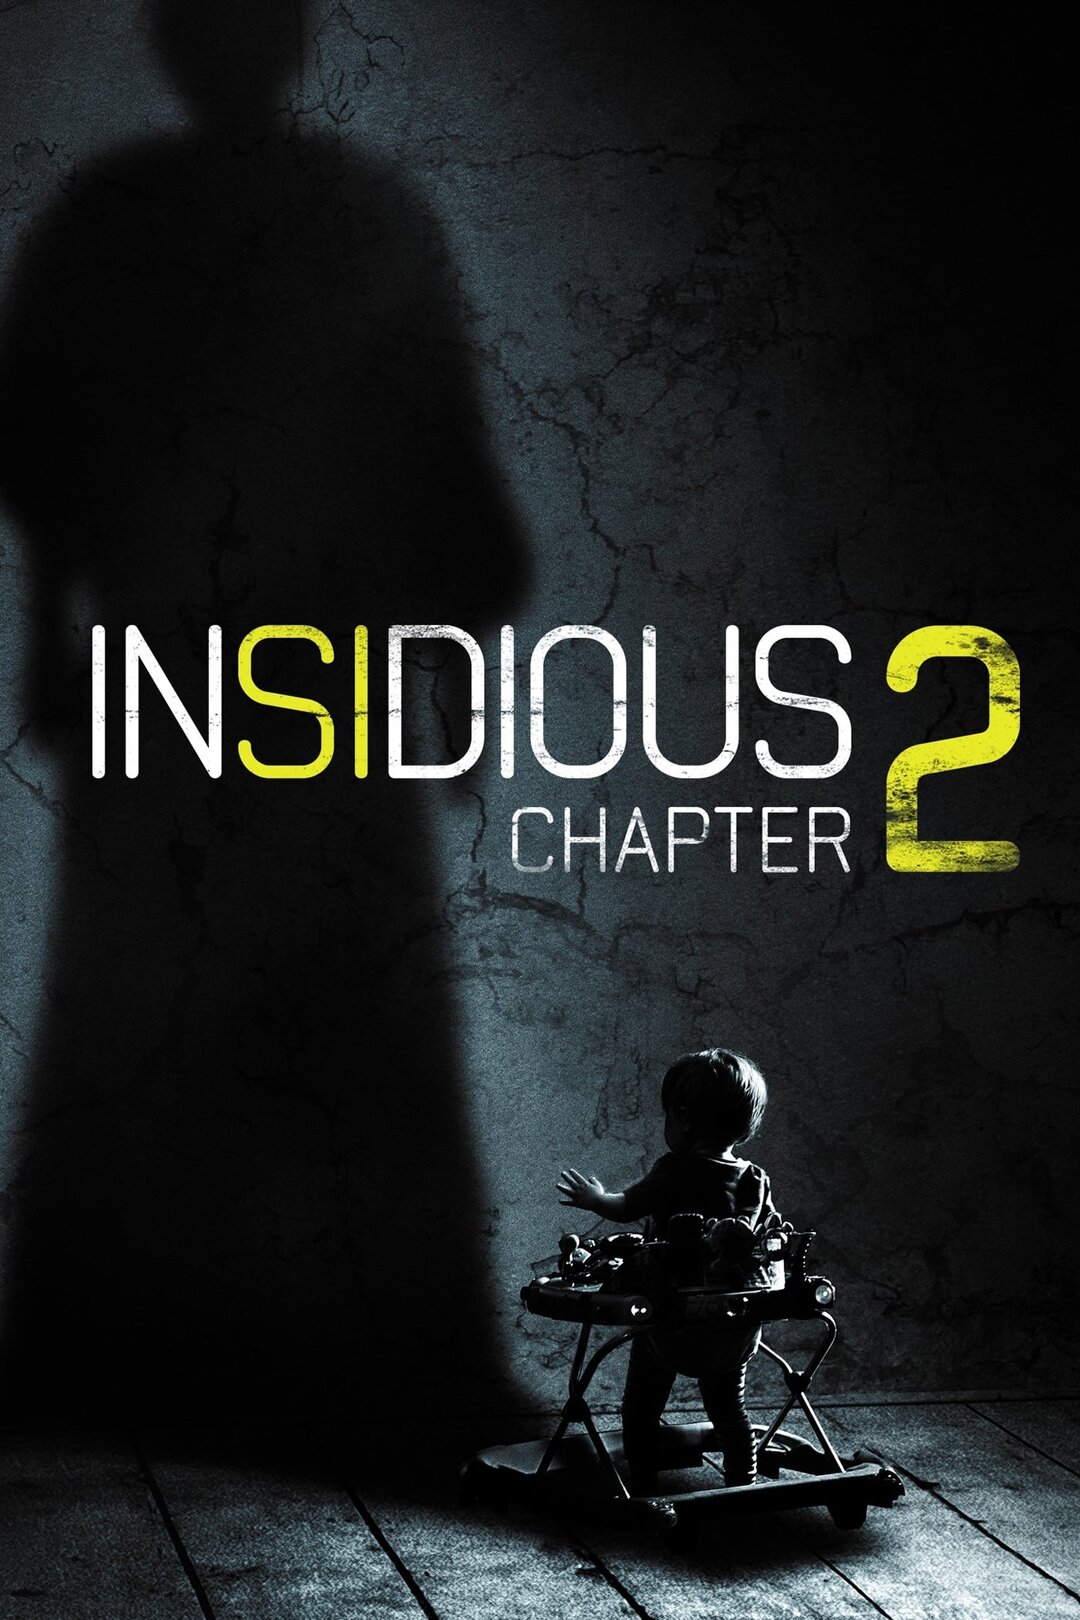 insidious 2 movie summary